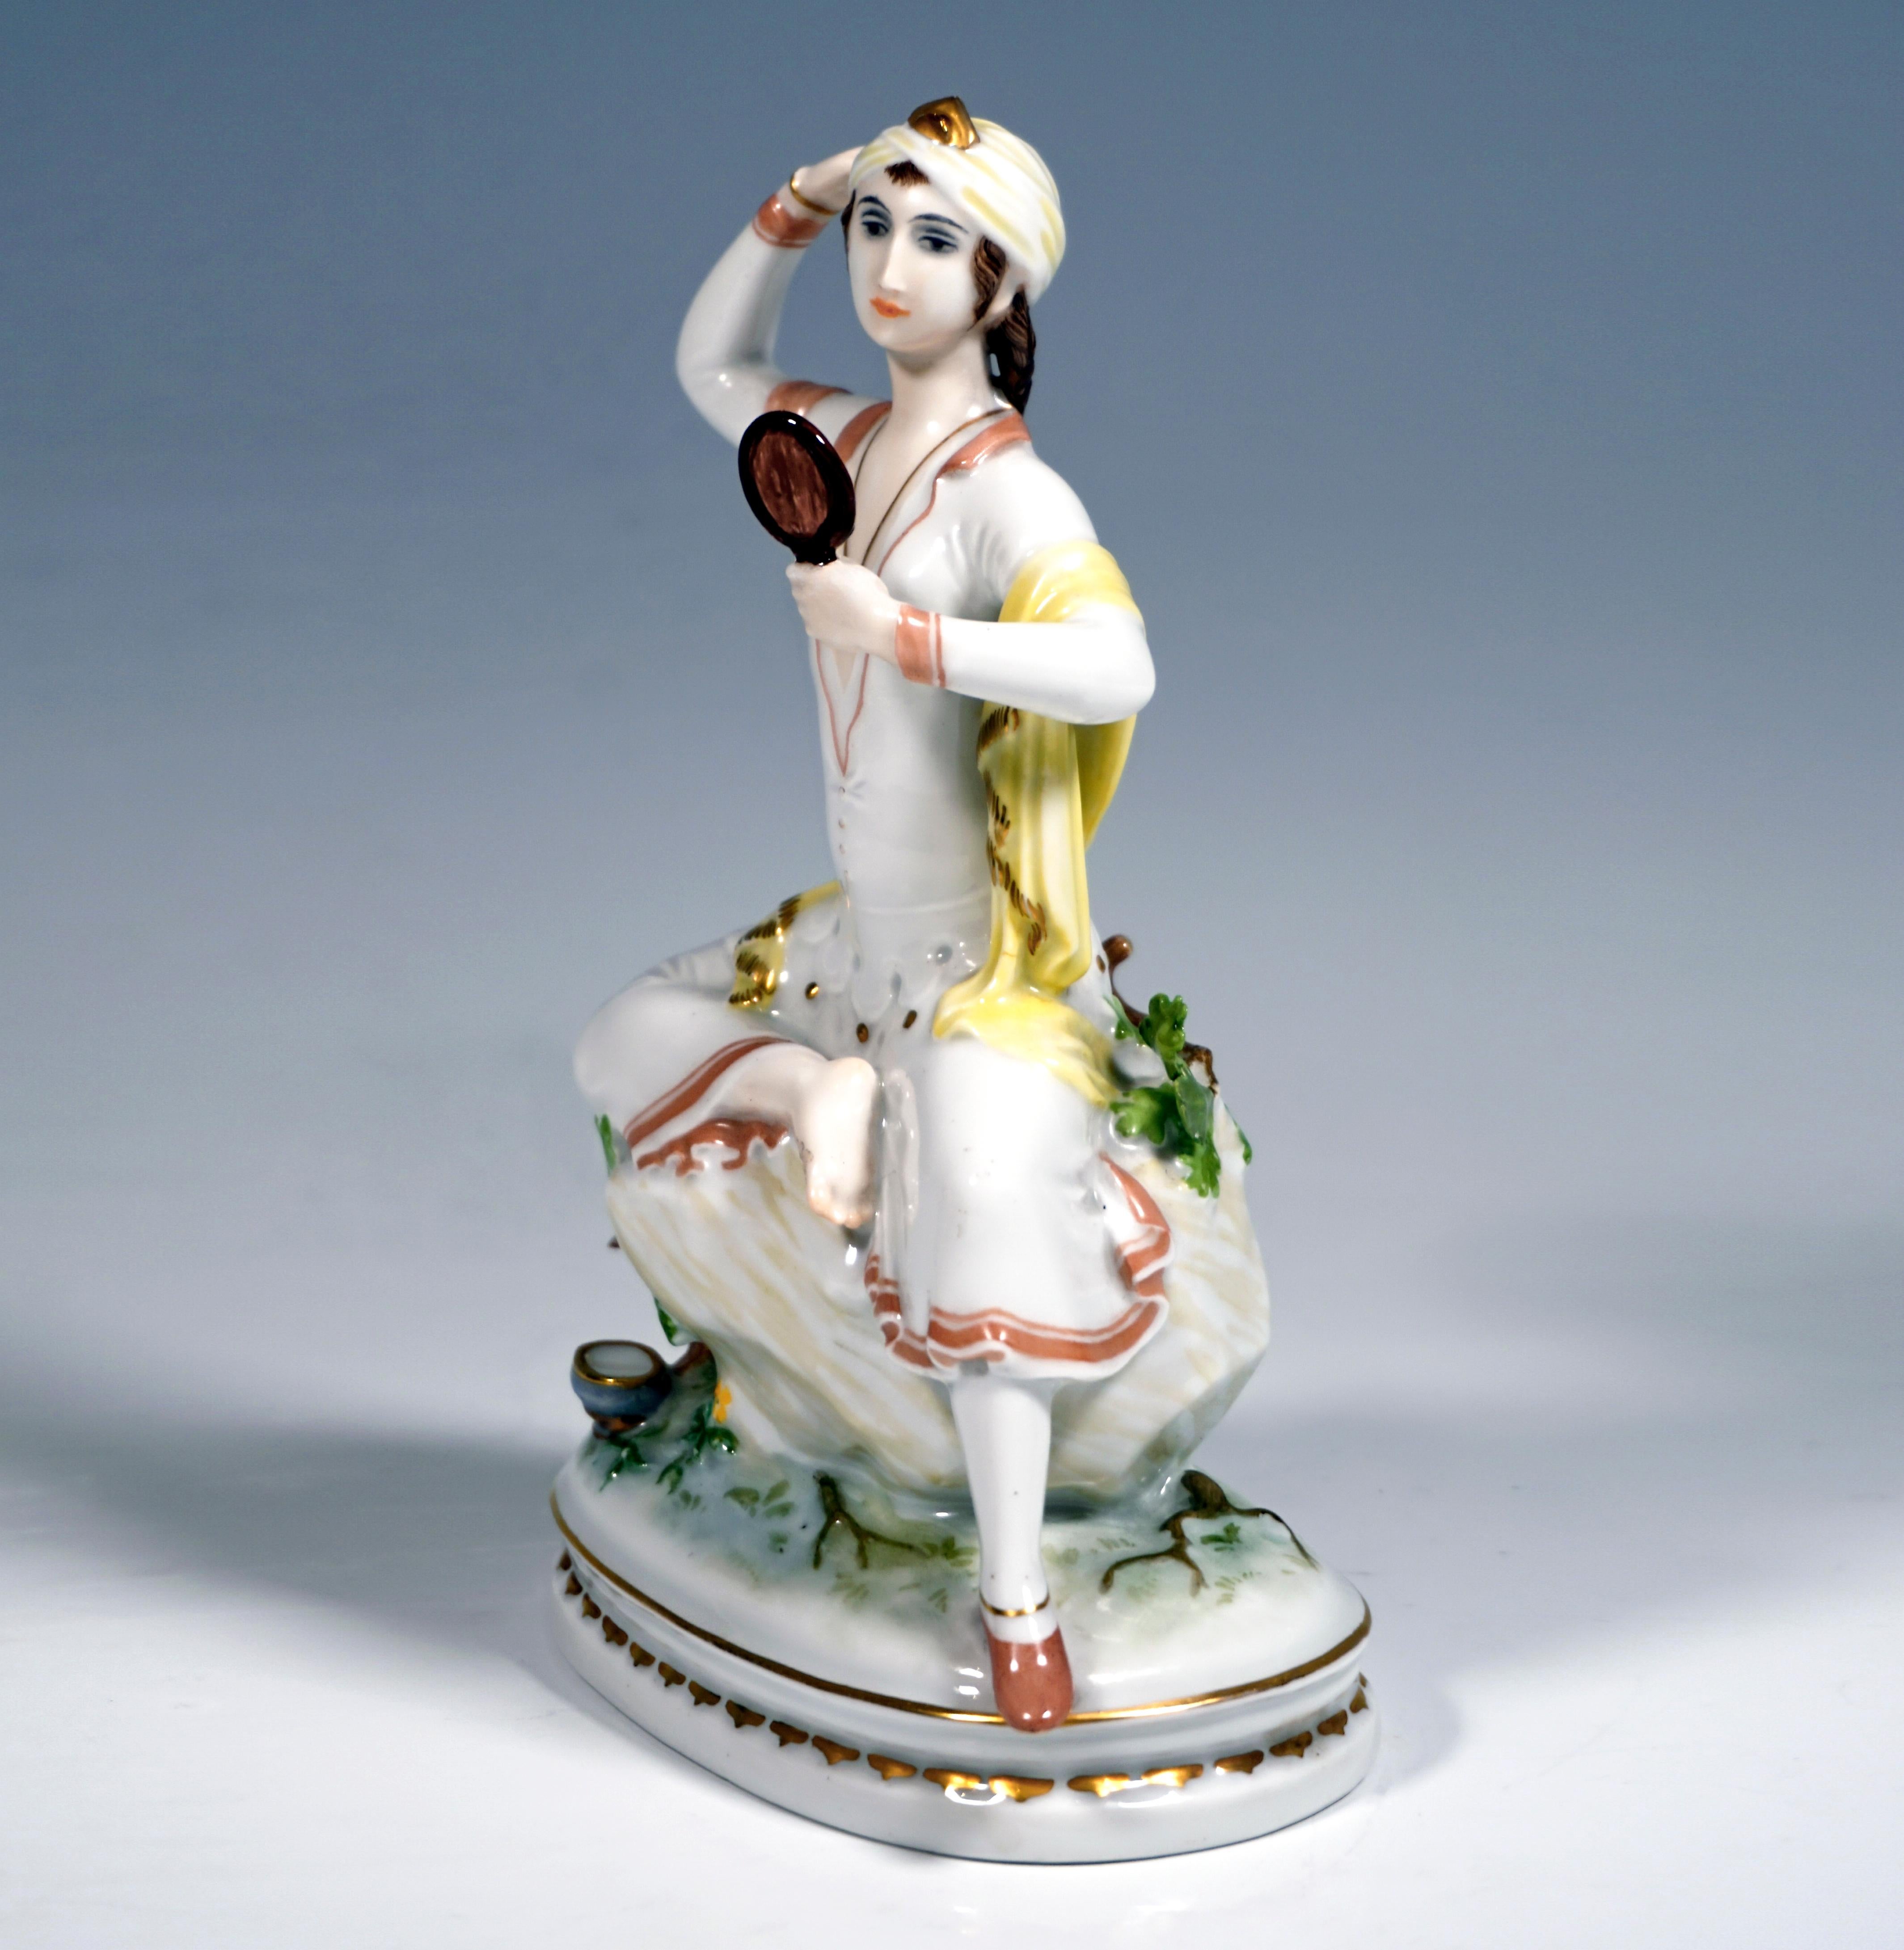 Seltene Art-Déco-Porzellanfigur aus den 1920er Jahren.
Junge orientalische Frau, die auf einem Felsen sitzt und ihr Bein hochlegt, sich in einem Handspiegel betrachtet und ihre Kopfbedeckung zurechtrückt. Sparsame Bemalung der Kleidung in Rosa und